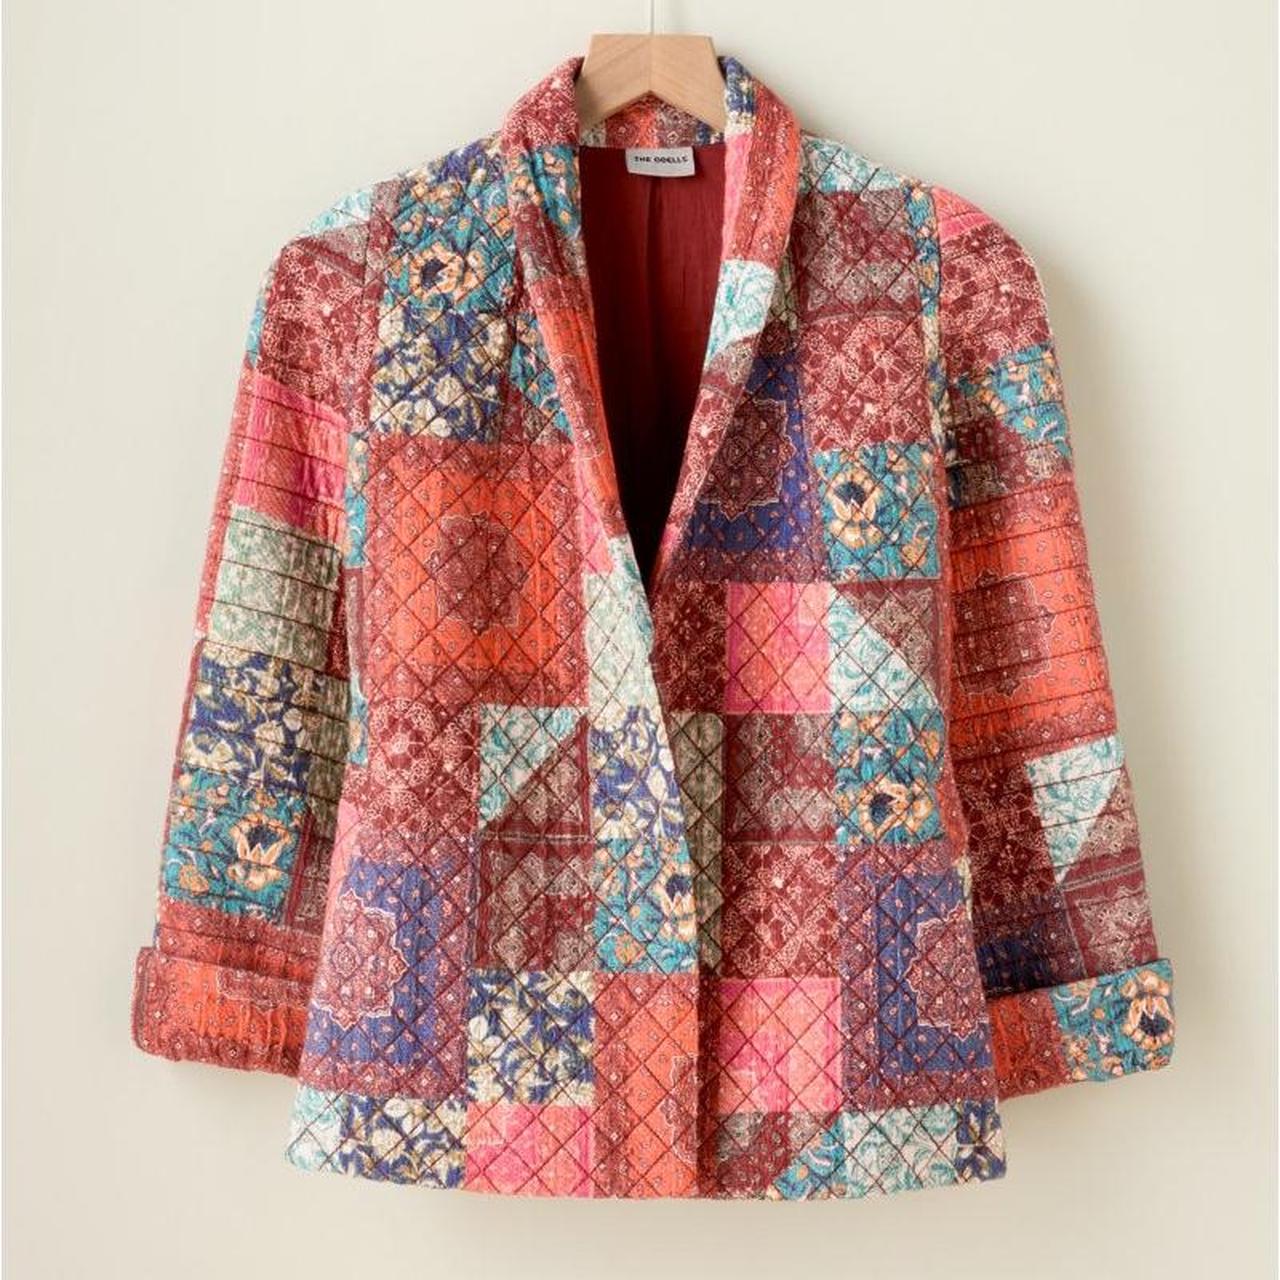 Stunning vintage patchwork quilted jacket. Super... - Depop